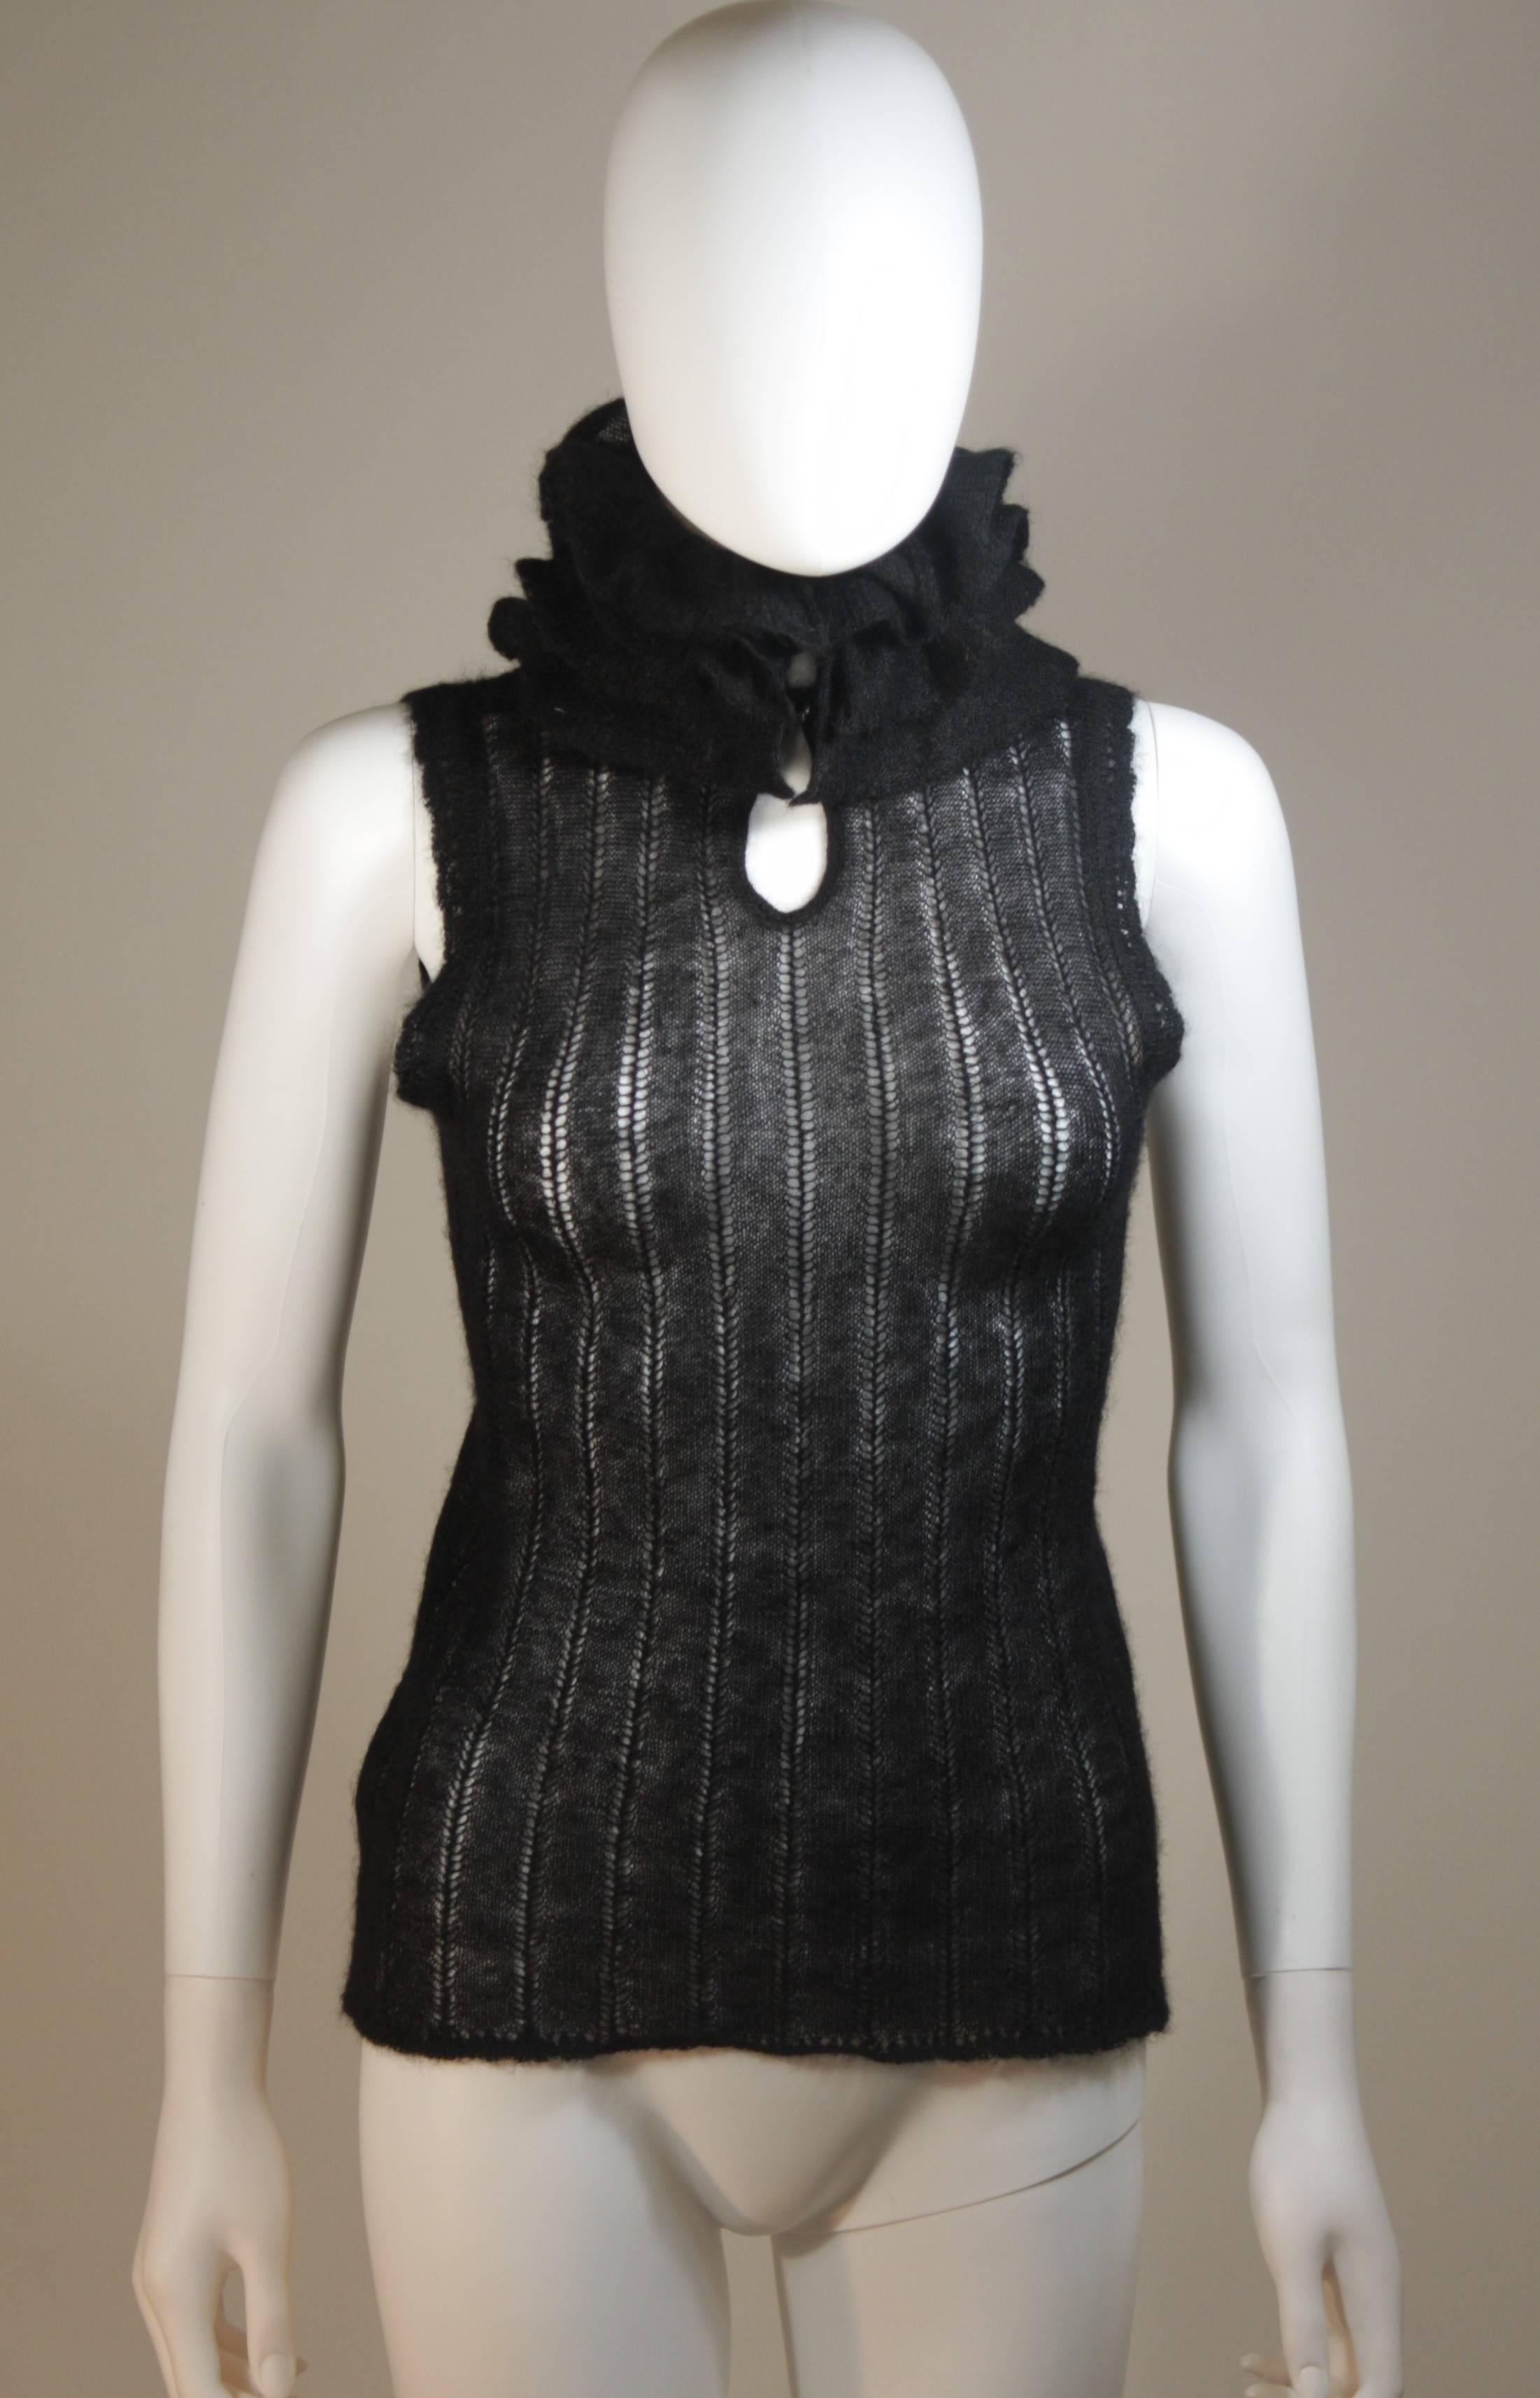 Dieses Chanel-Kleid ist aus einer leichten schwarzen Mohair-Mischung gefertigt. Der Hals wird vorne in der Mitte mit Knöpfen verschlossen. In ausgezeichnetem Zustand. Hergestellt in Italien.

  **Bitte vergleichen Sie die Maße für Ihre persönliche